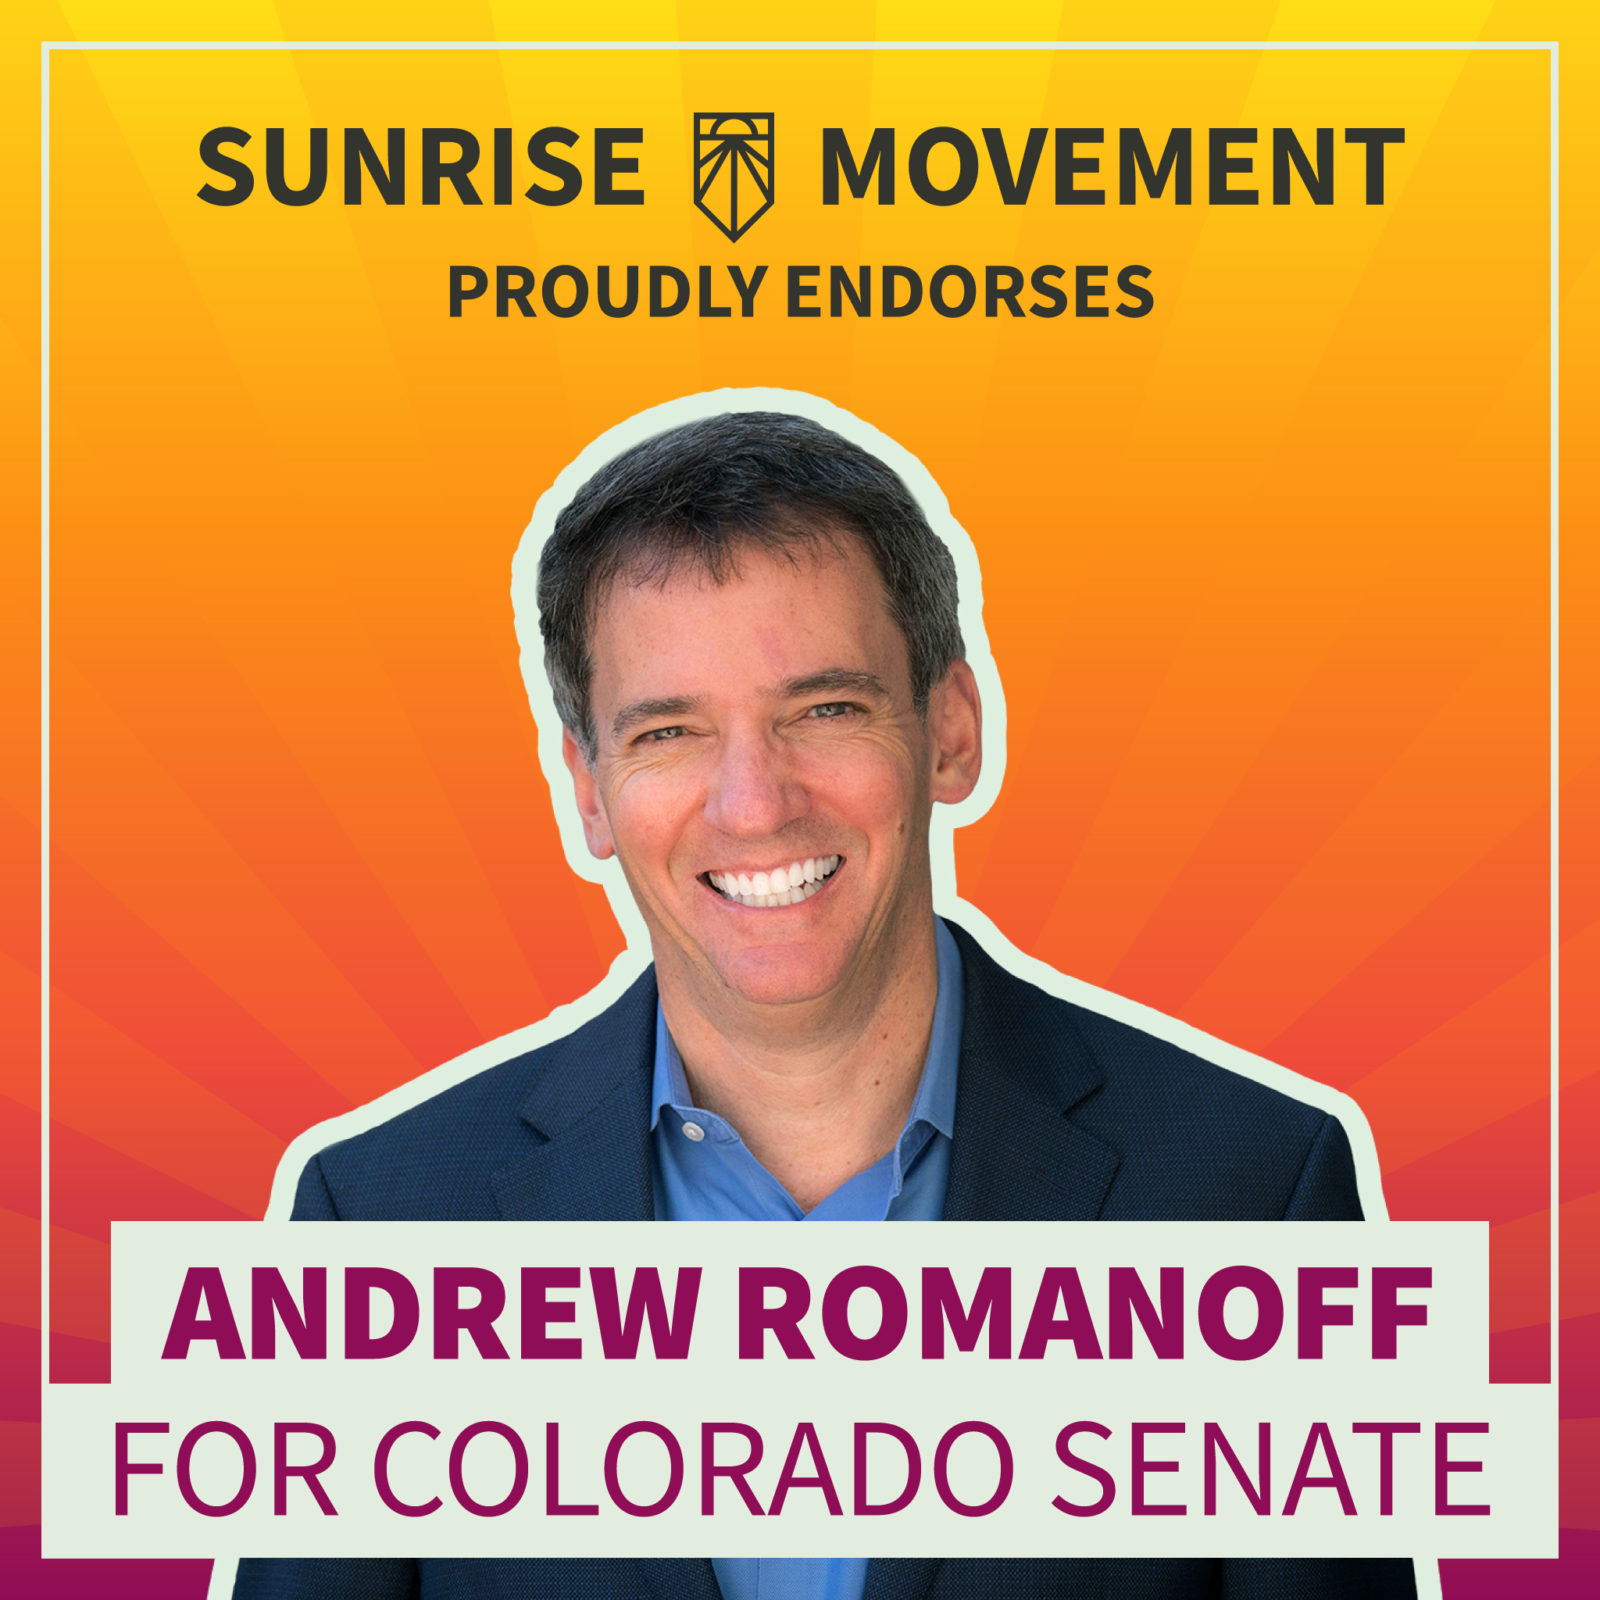 Una foto de Andrew Romanoff con texto: Sunrise Movement respalda con orgullo a Andrew Romanoff para el Senado de Colorado